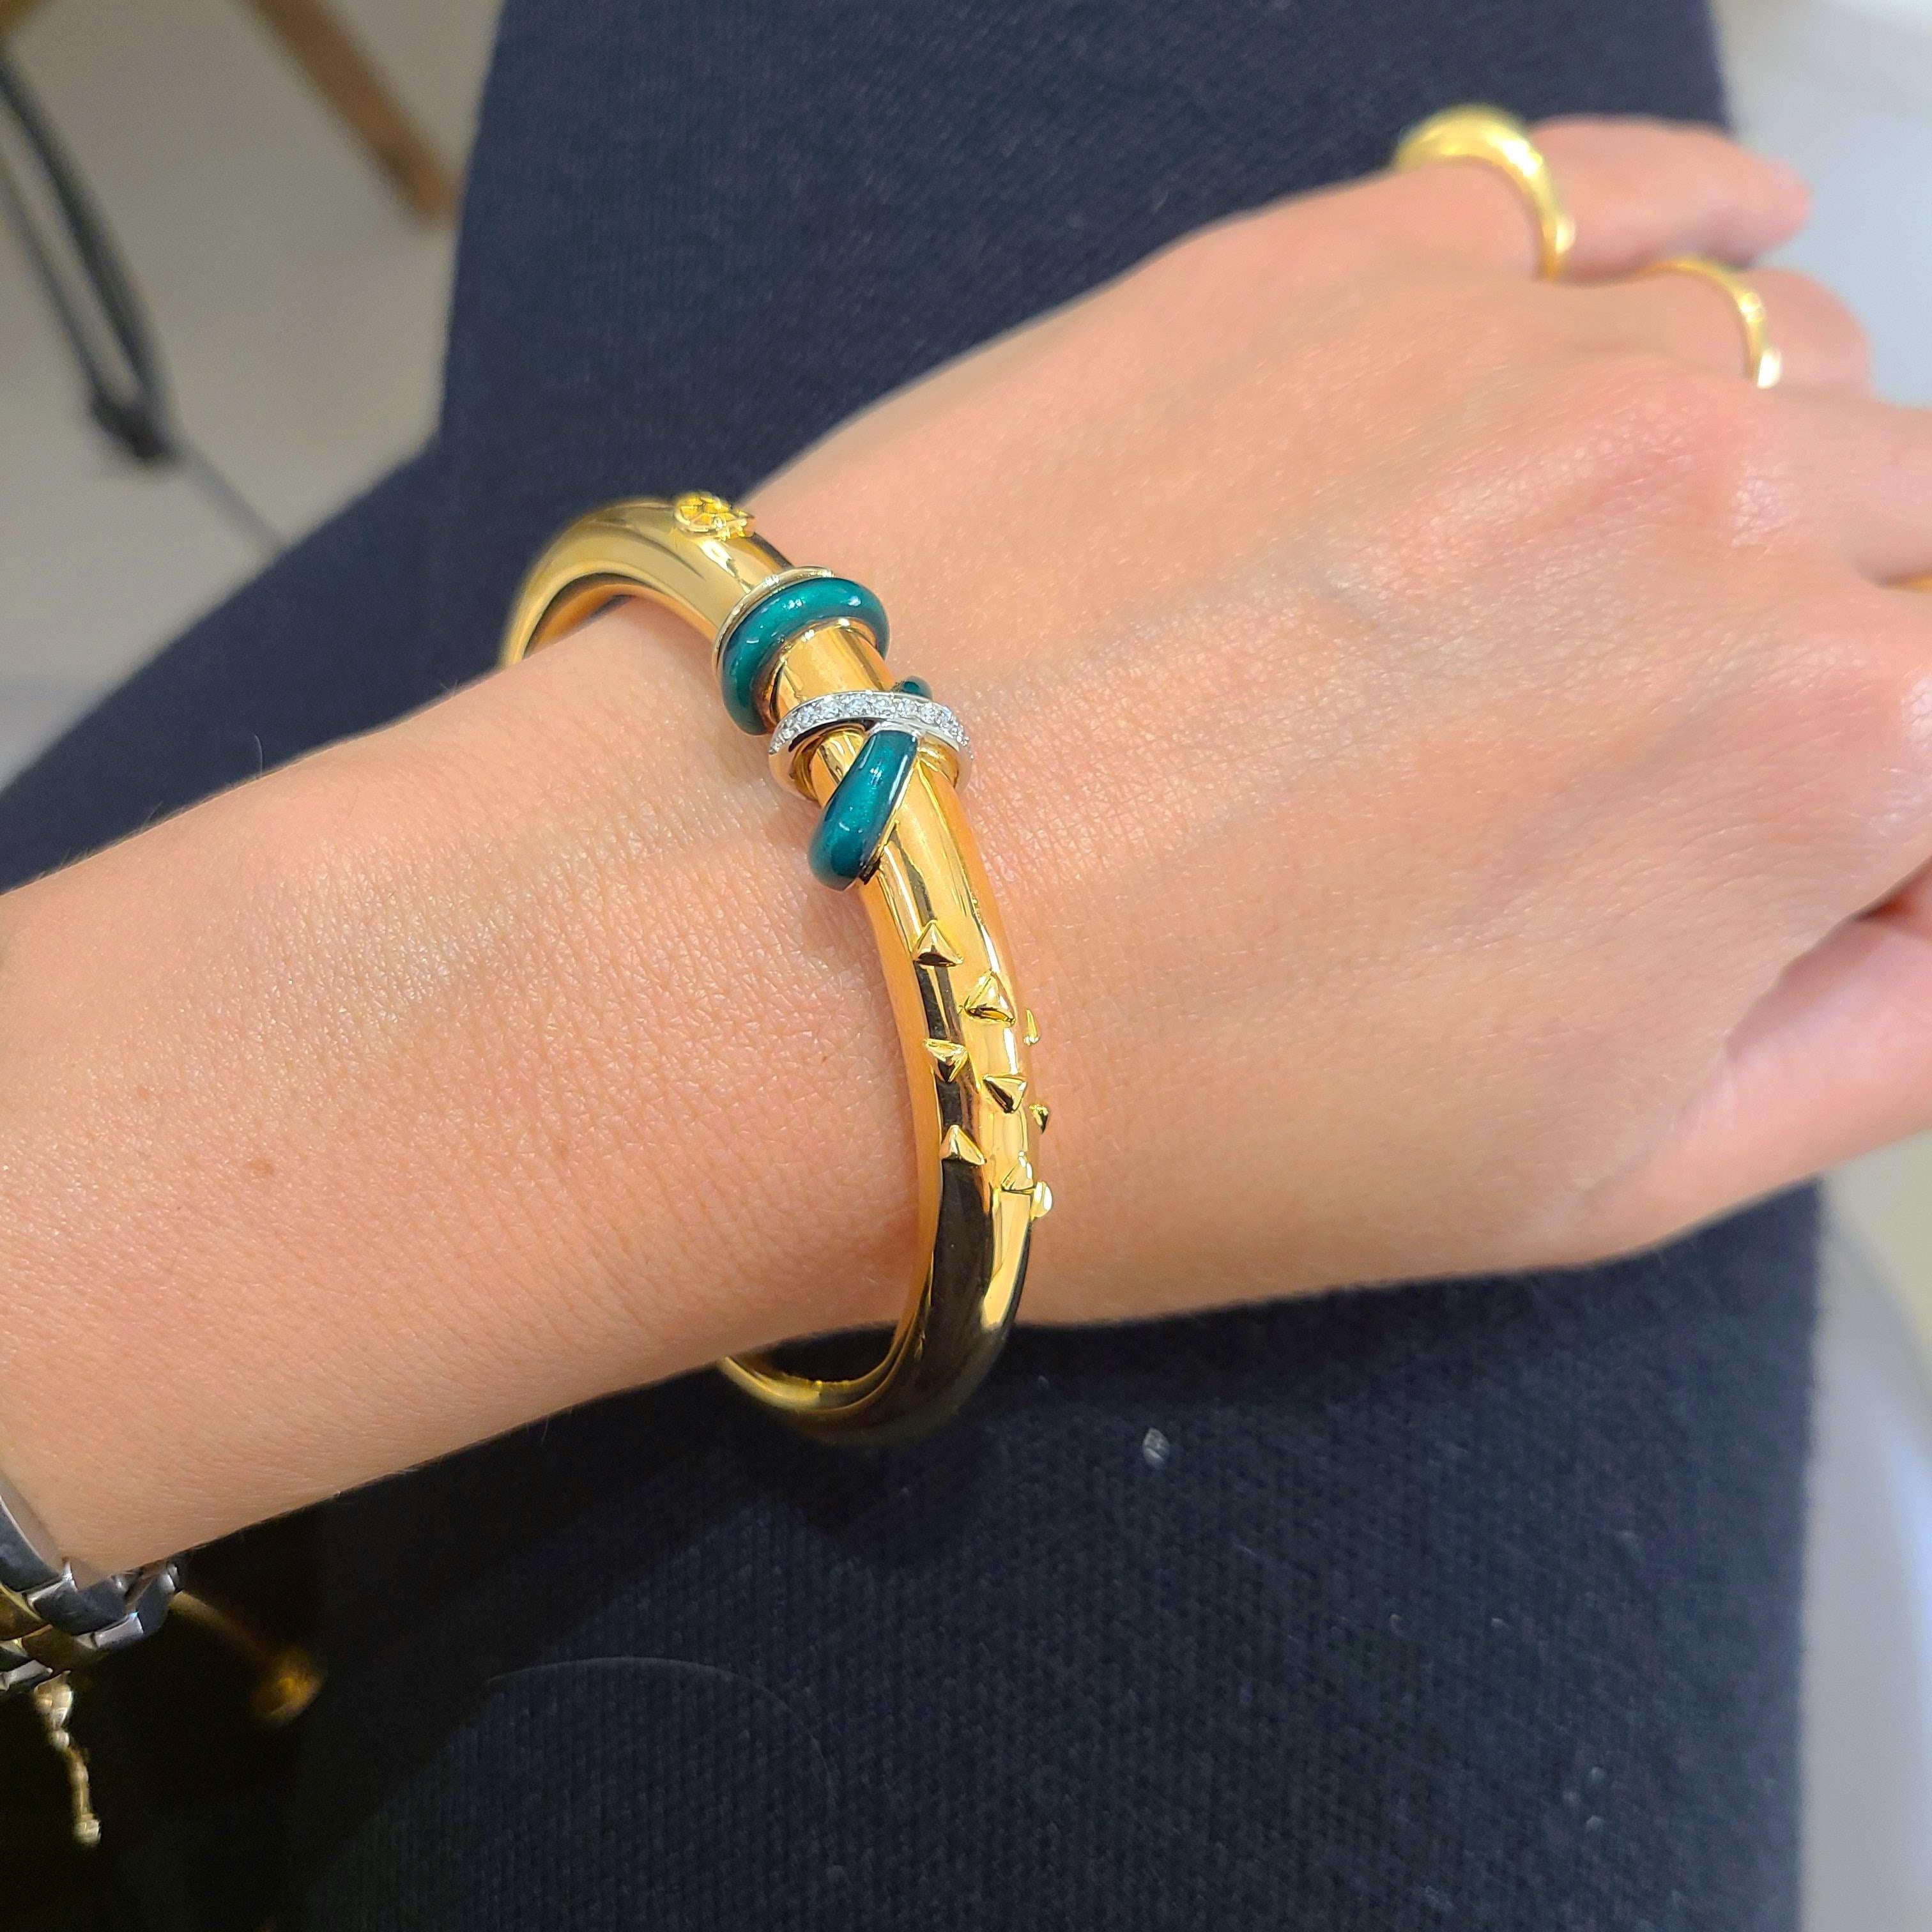 Ce magnifique bracelet en or jaune 18 carats est conçu par la société italienne de renommée mondiale La Nouvelle Bague. Ils sont connus pour leur travail d'émail exquis, mariant le classique et le moderne.
Ce bracelet est en or jaune poli avec des